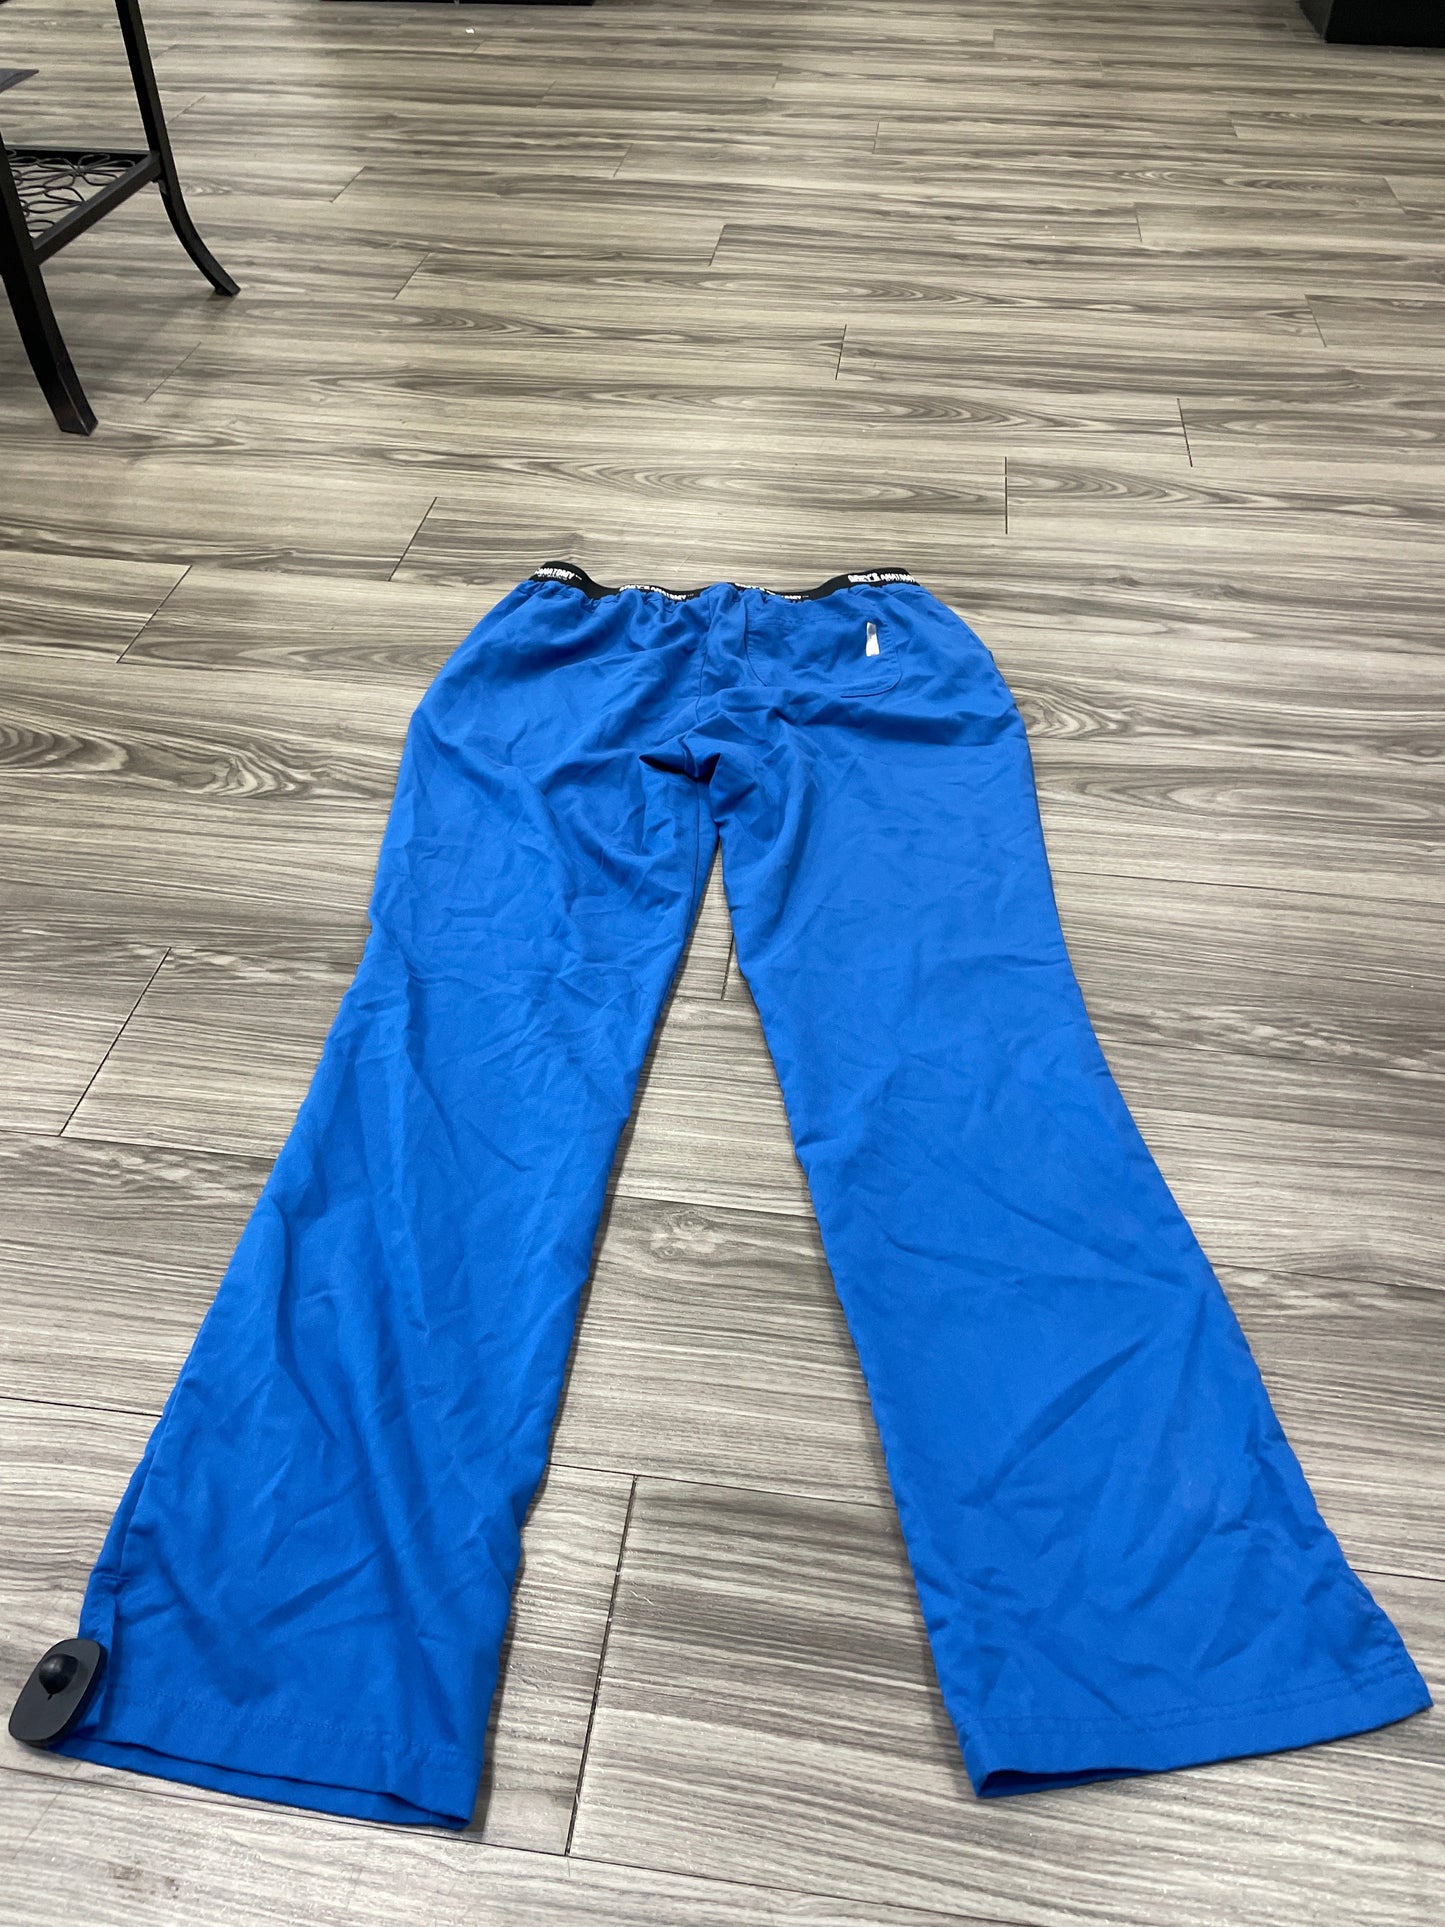 Pants Cargo & Utility By Greys Anatomy  Size: L